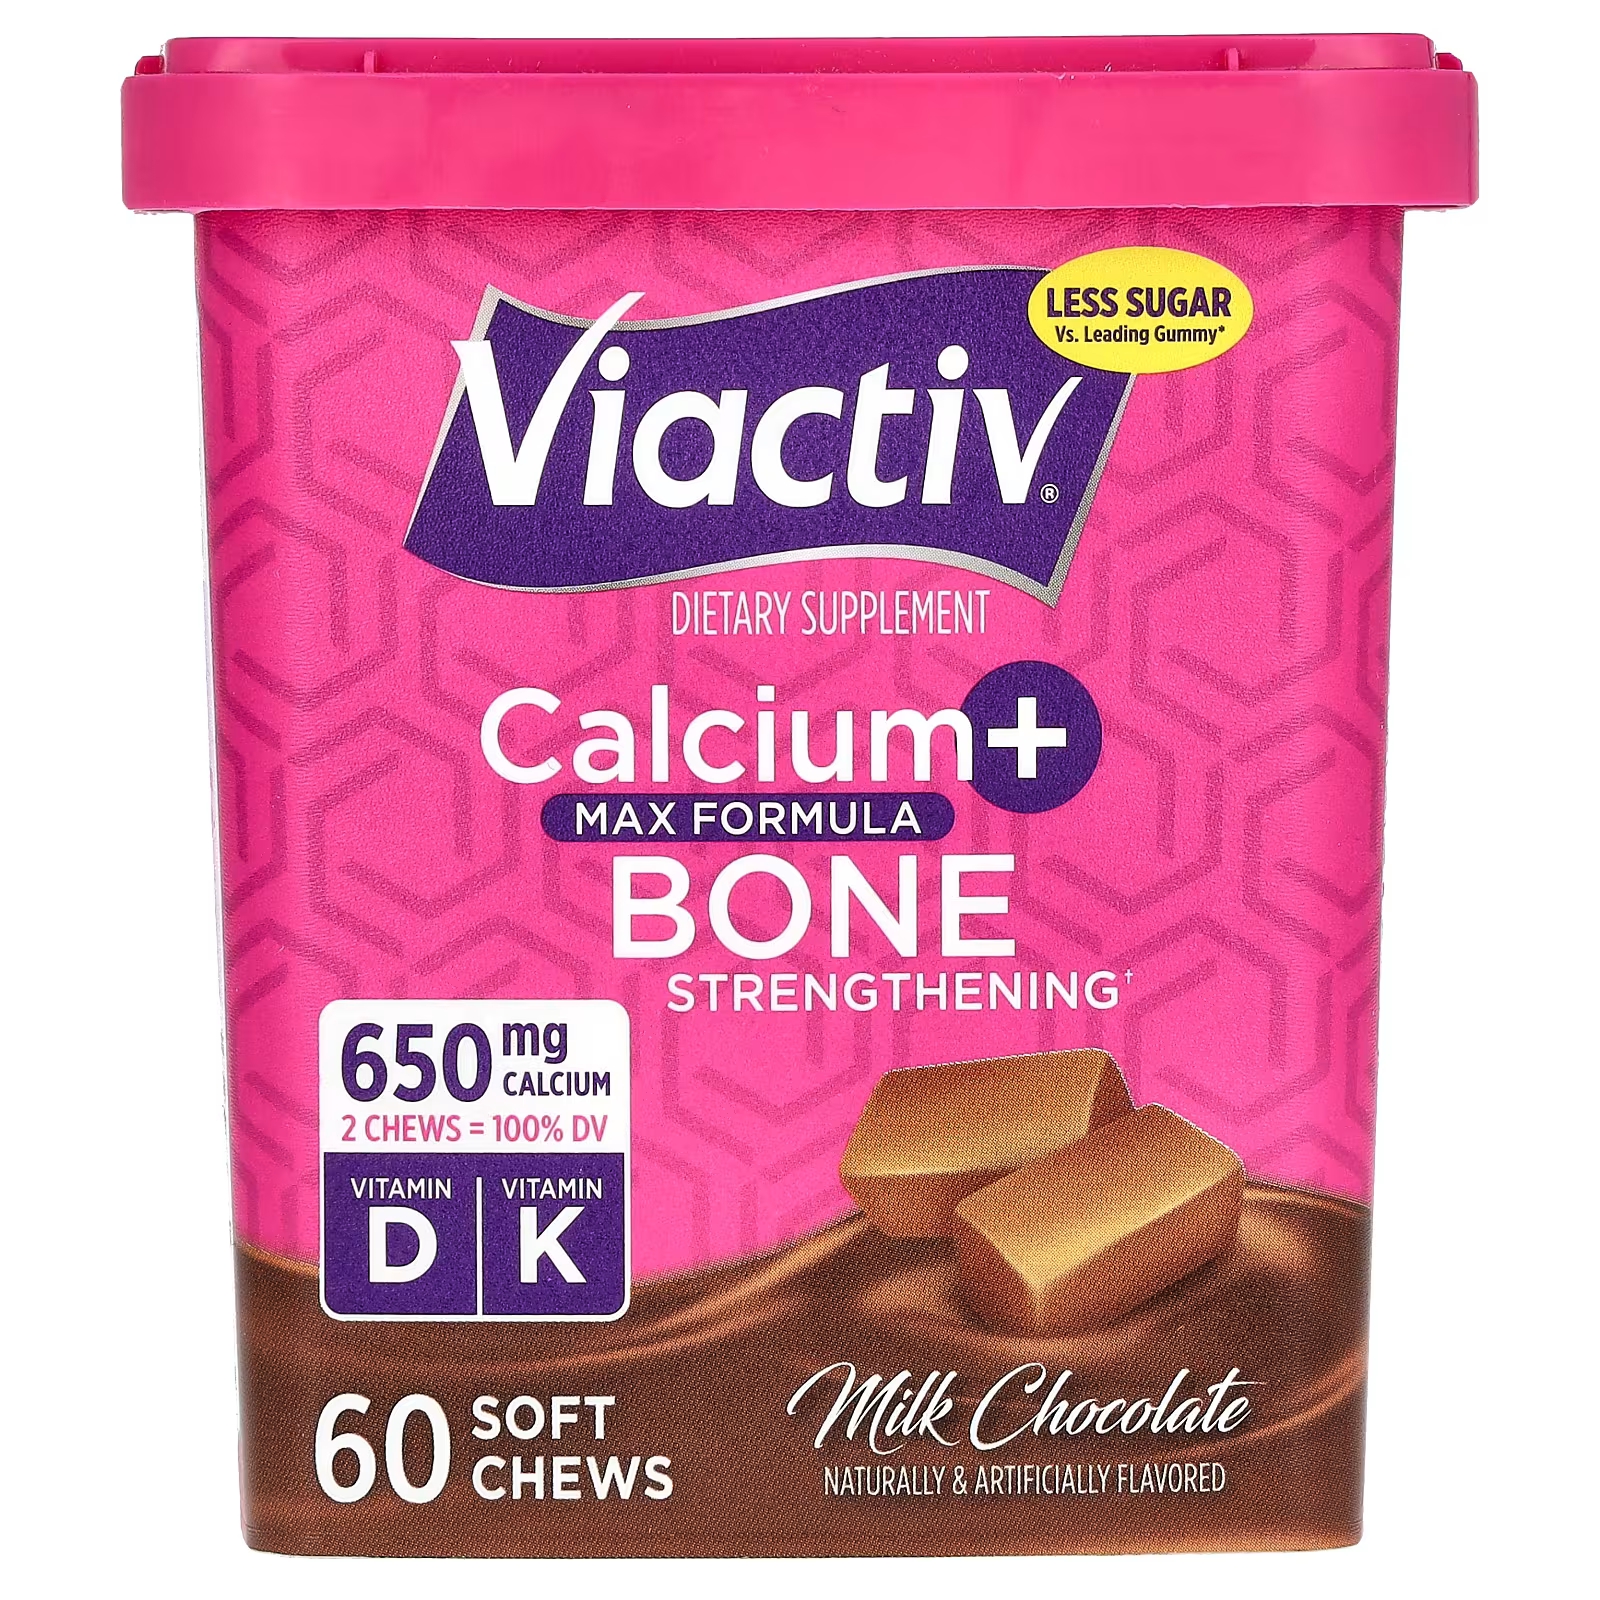 Молочный шоколад Viactiv Calcium + Bone Strengthening Max Formula, 60 мягких жевательных конфет swanson кальций с витаминами d и k 100 капсул